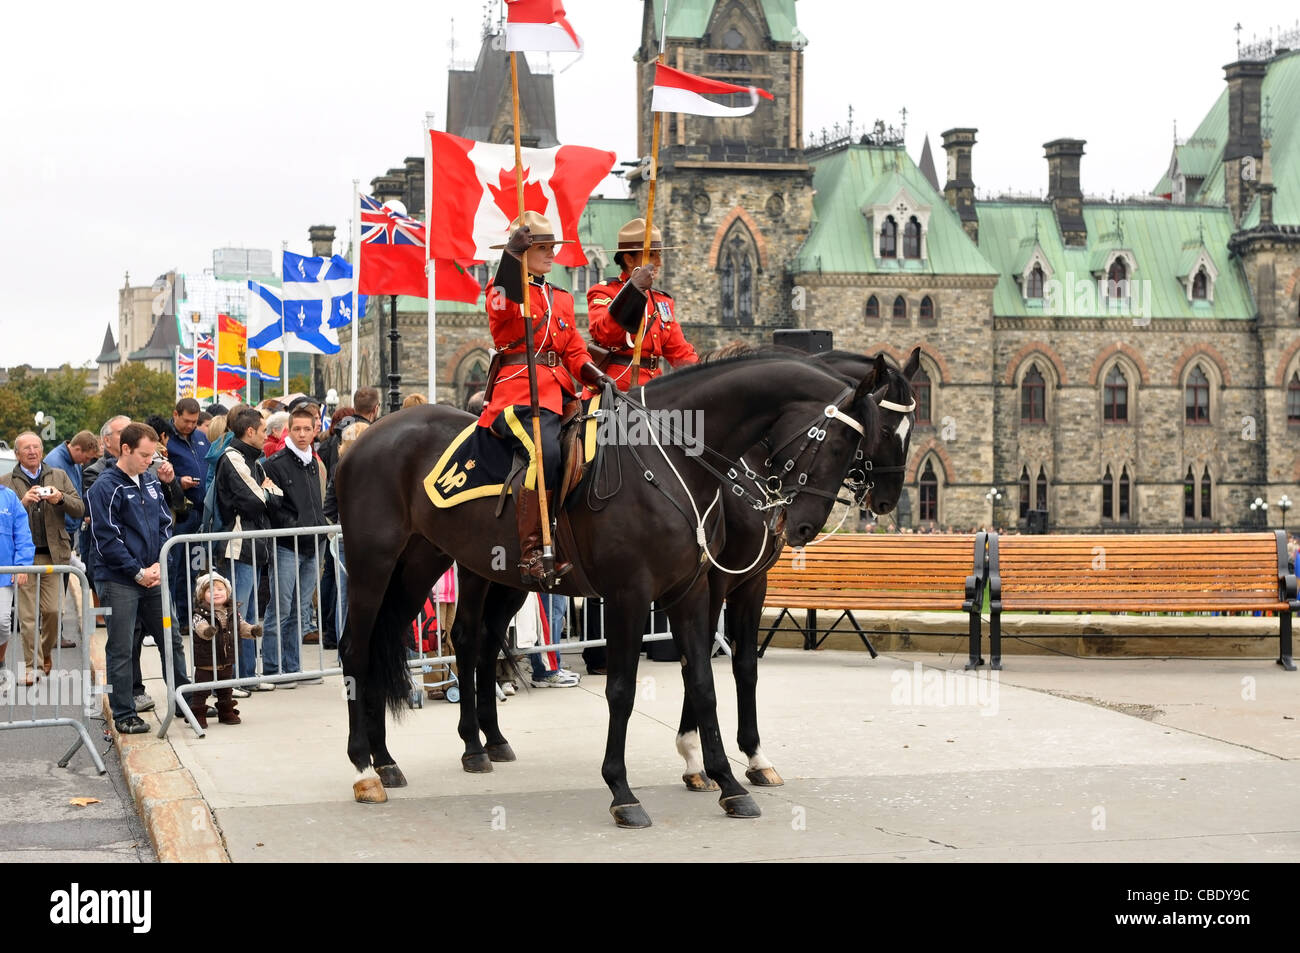 Gendarmerie royale du Canada en service à la Police nationale et des agents de la paix's Memorial sur la Colline du Parlement. Septembre 26, 2010 Banque D'Images